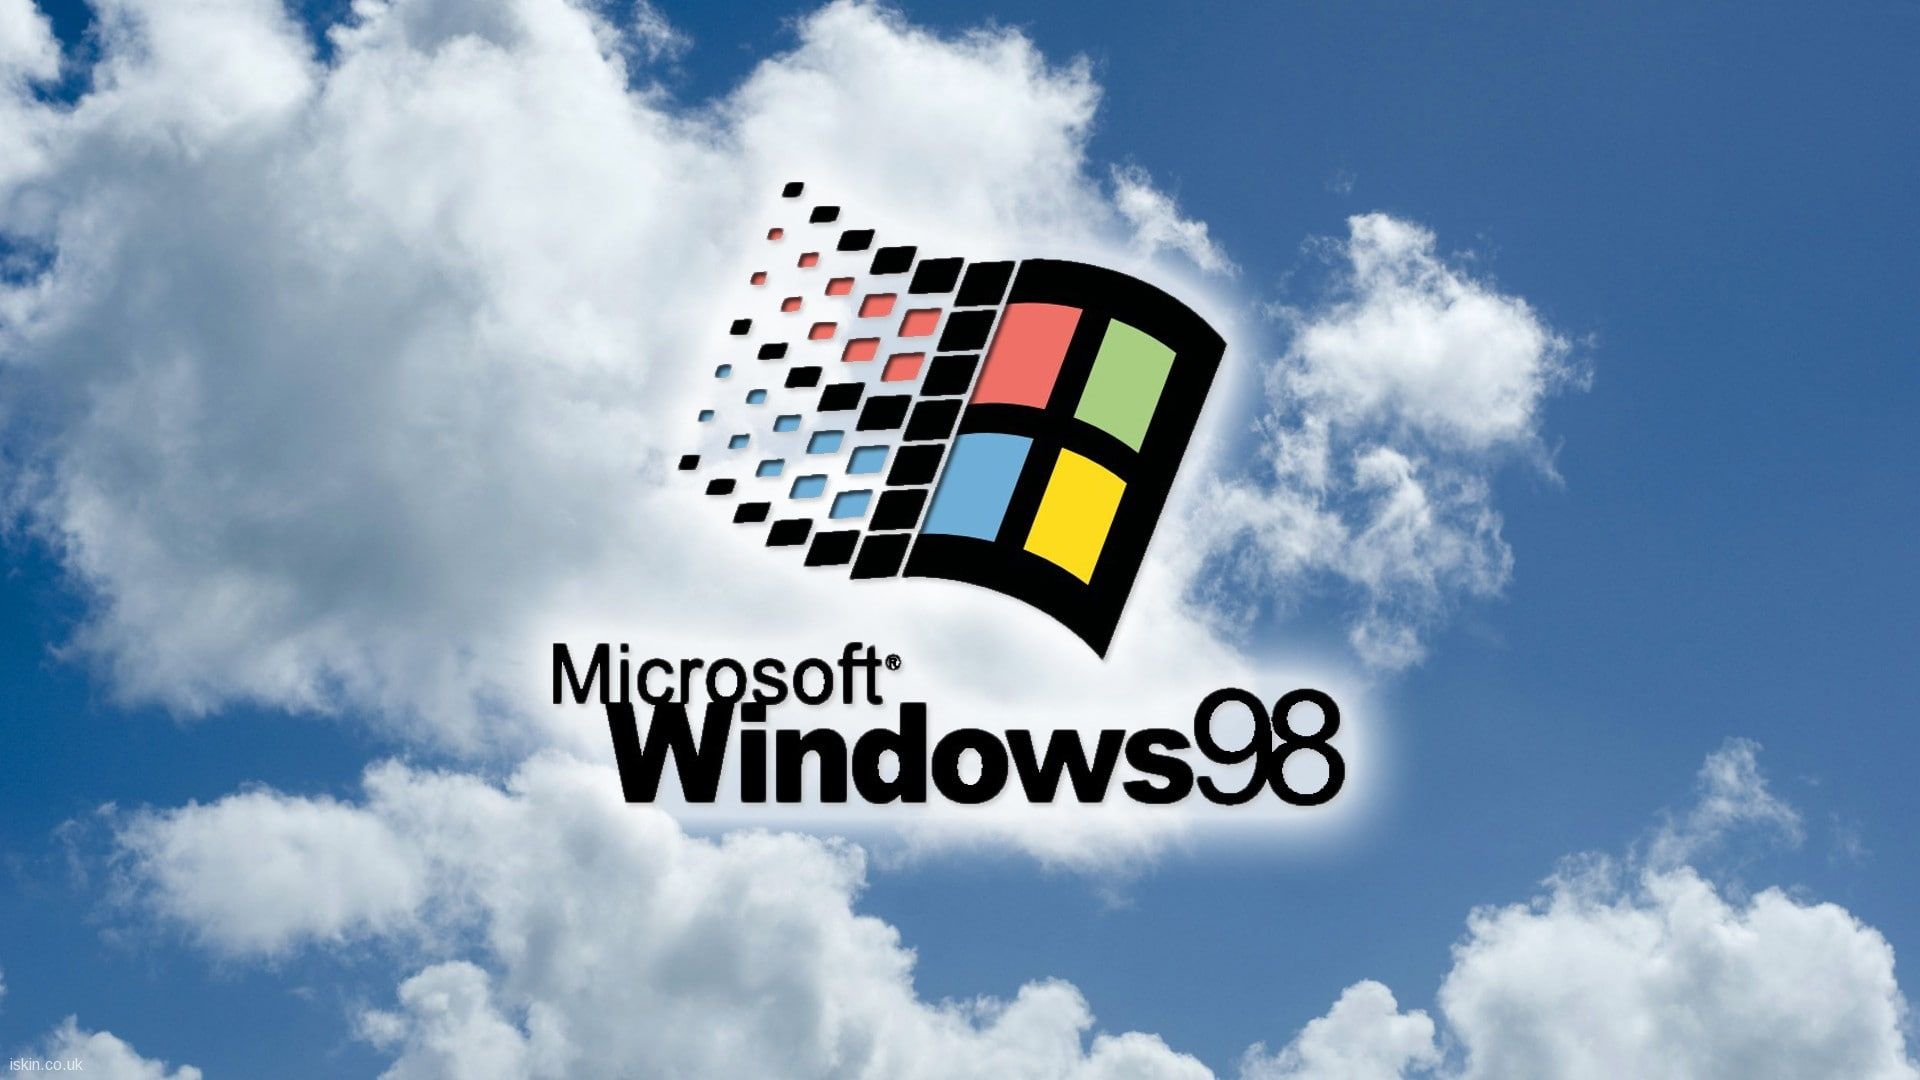 Hình nền Windows cũ là một lựa chọn tuyệt vời cho những ai yêu thích sự đơn giản và truyền thống. Với những hình ảnh quen thuộc của Windows cũ, bạn sẽ được trở về thời kỳ của những chiếc máy tính đầu tiên và trải nghiệm những kỷ niệm đáng nhớ. Hãy lựa chọn hình nền Windows cũ để tái hiện lại những khoảnh khắc đáng nhớ trong quá khứ.